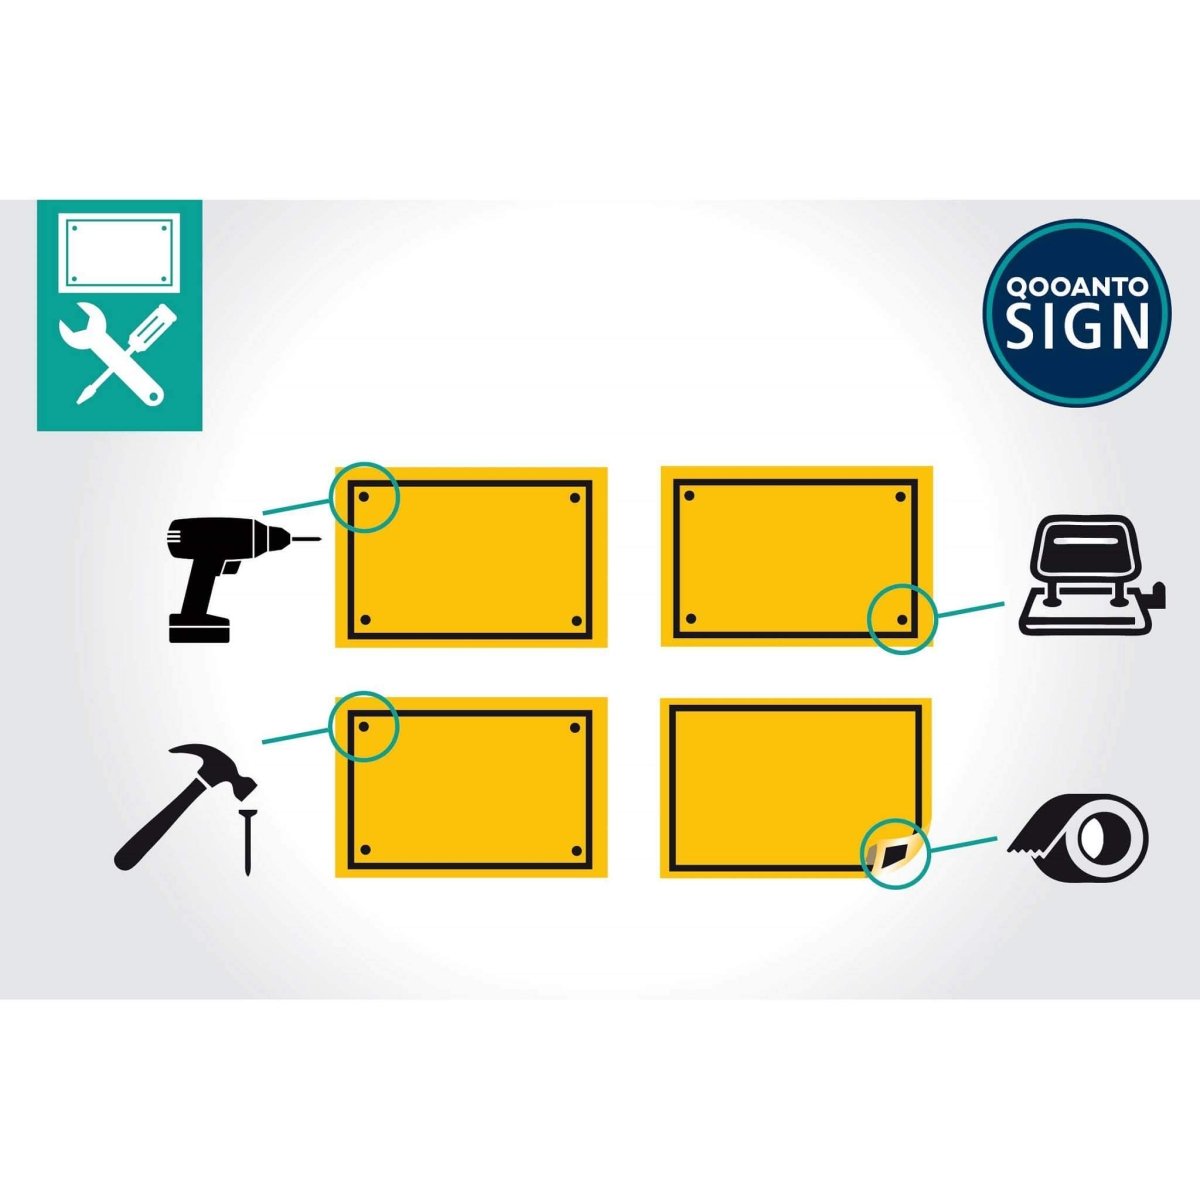 Privatgelände Parken Nur Für Kunden Schild aus Alu-Verbund mit UV-Schutz - QOOANTO-SIGN